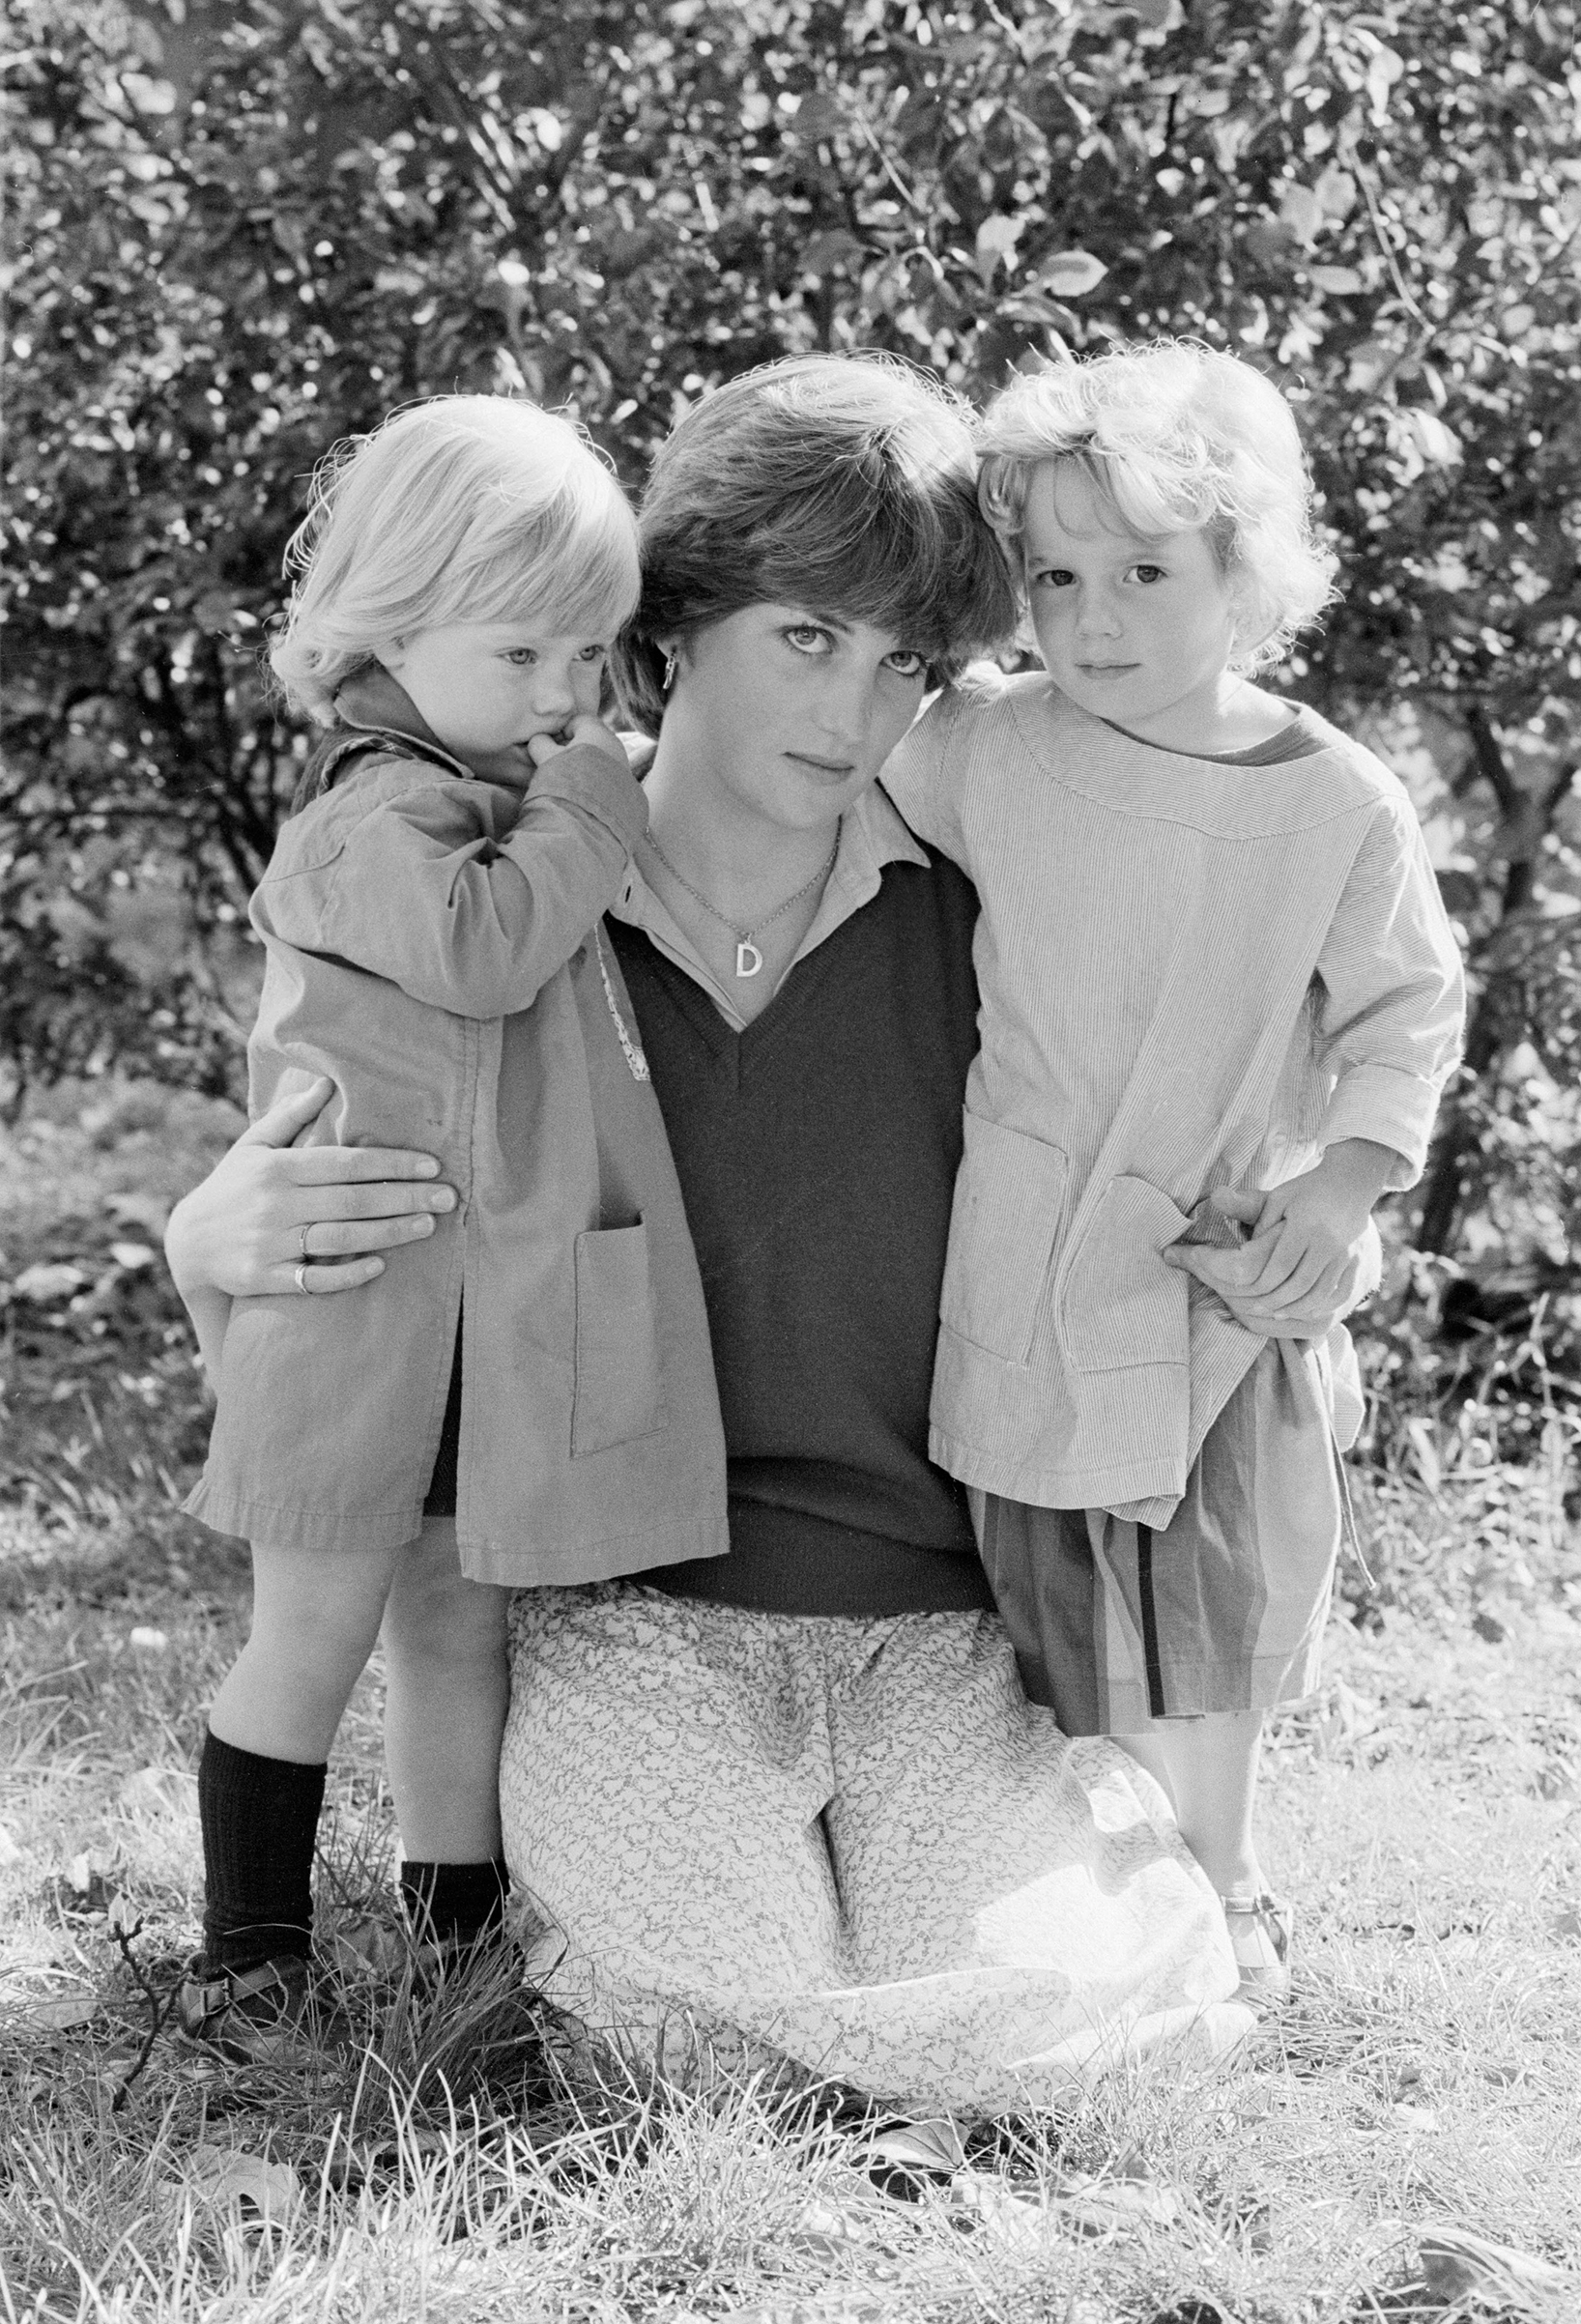 Princess Diana at age 19 as a nanny.